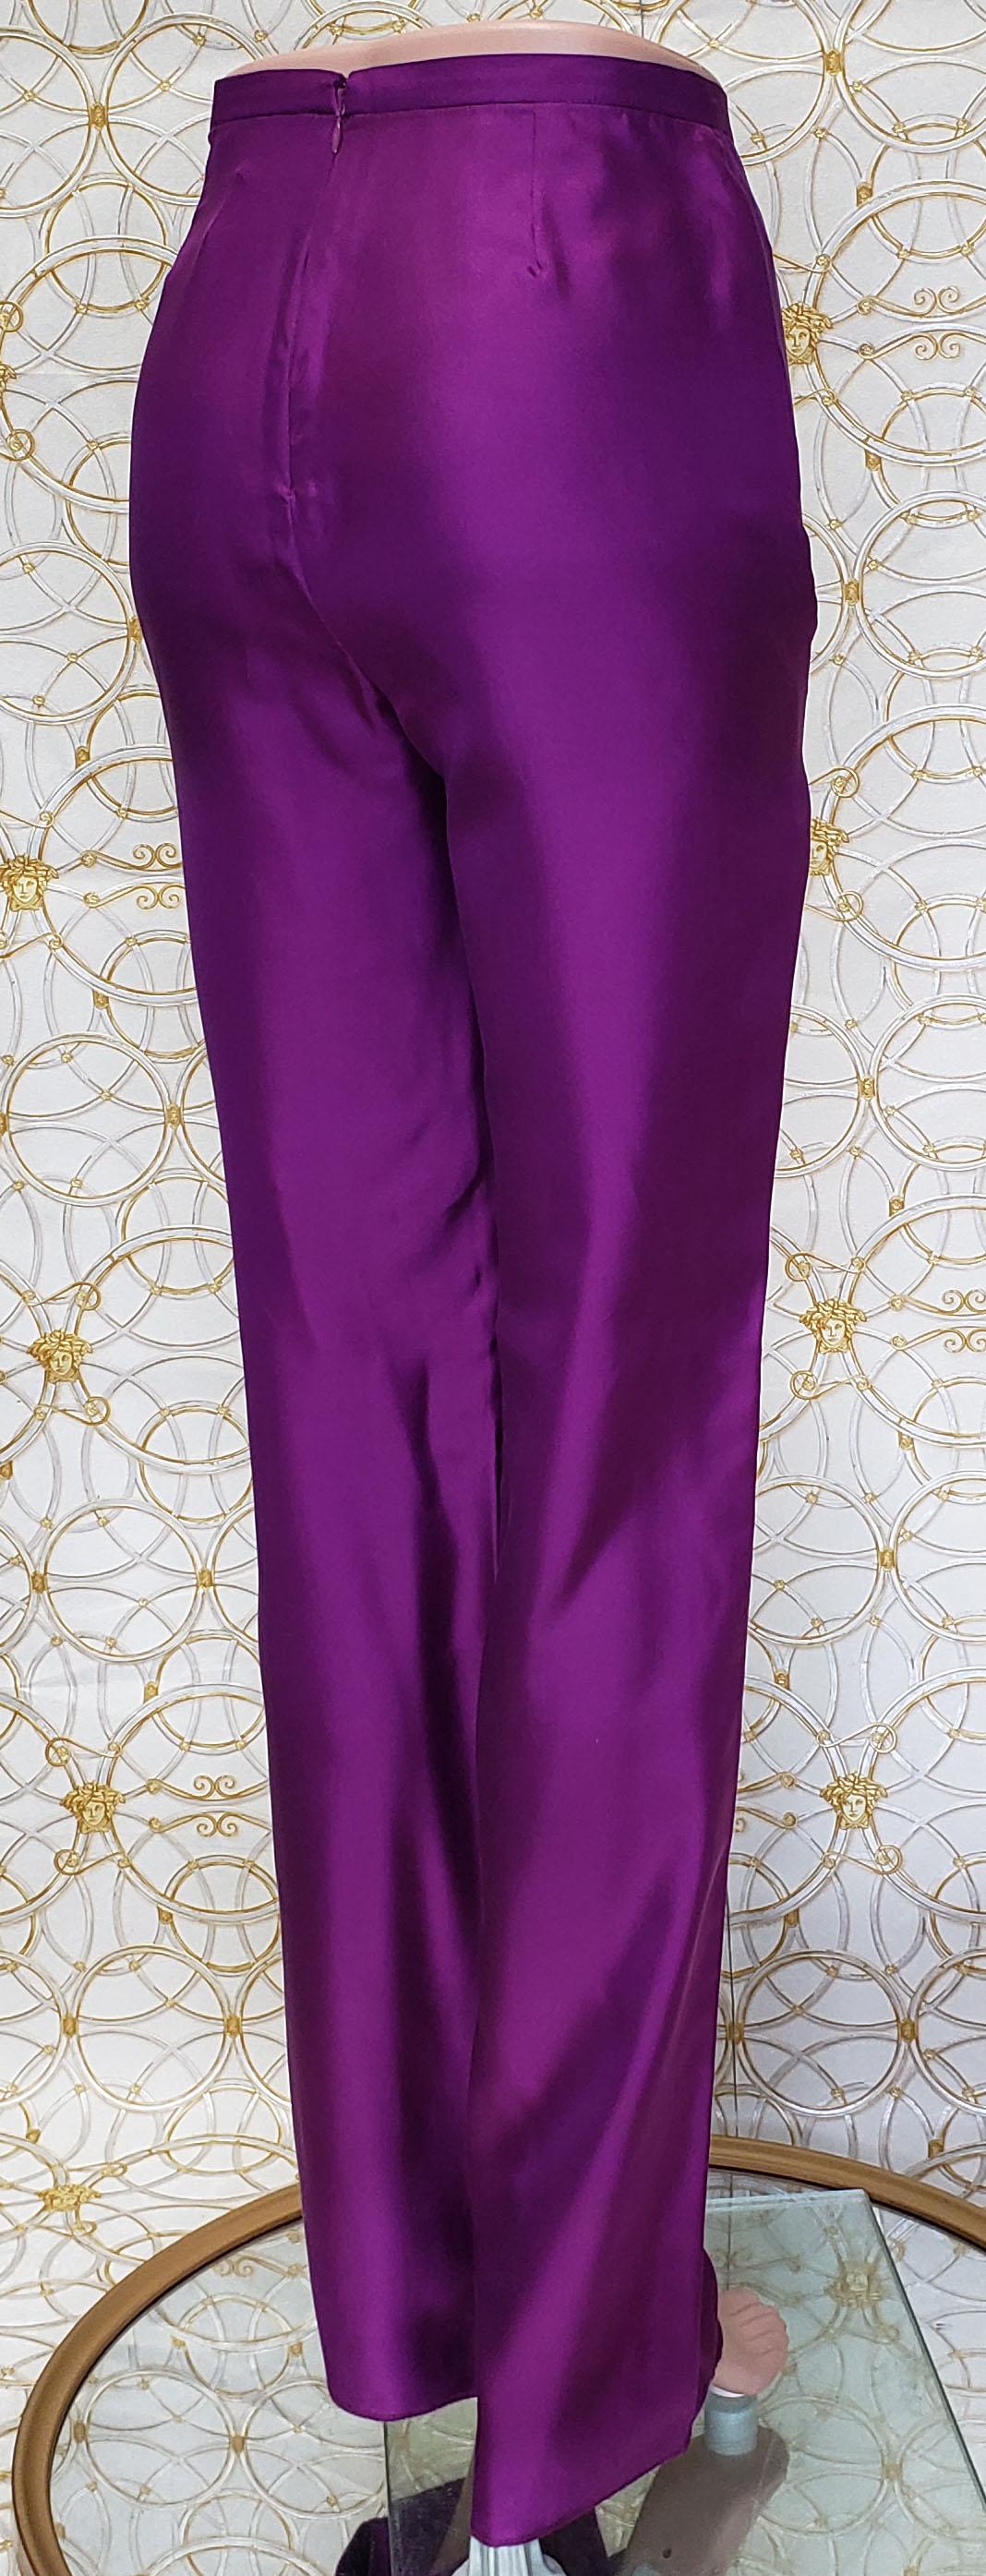 Purple VINTAGE GIANNI VERSACE PURPLE100% SILK PANTS size 42 - 8 For Sale